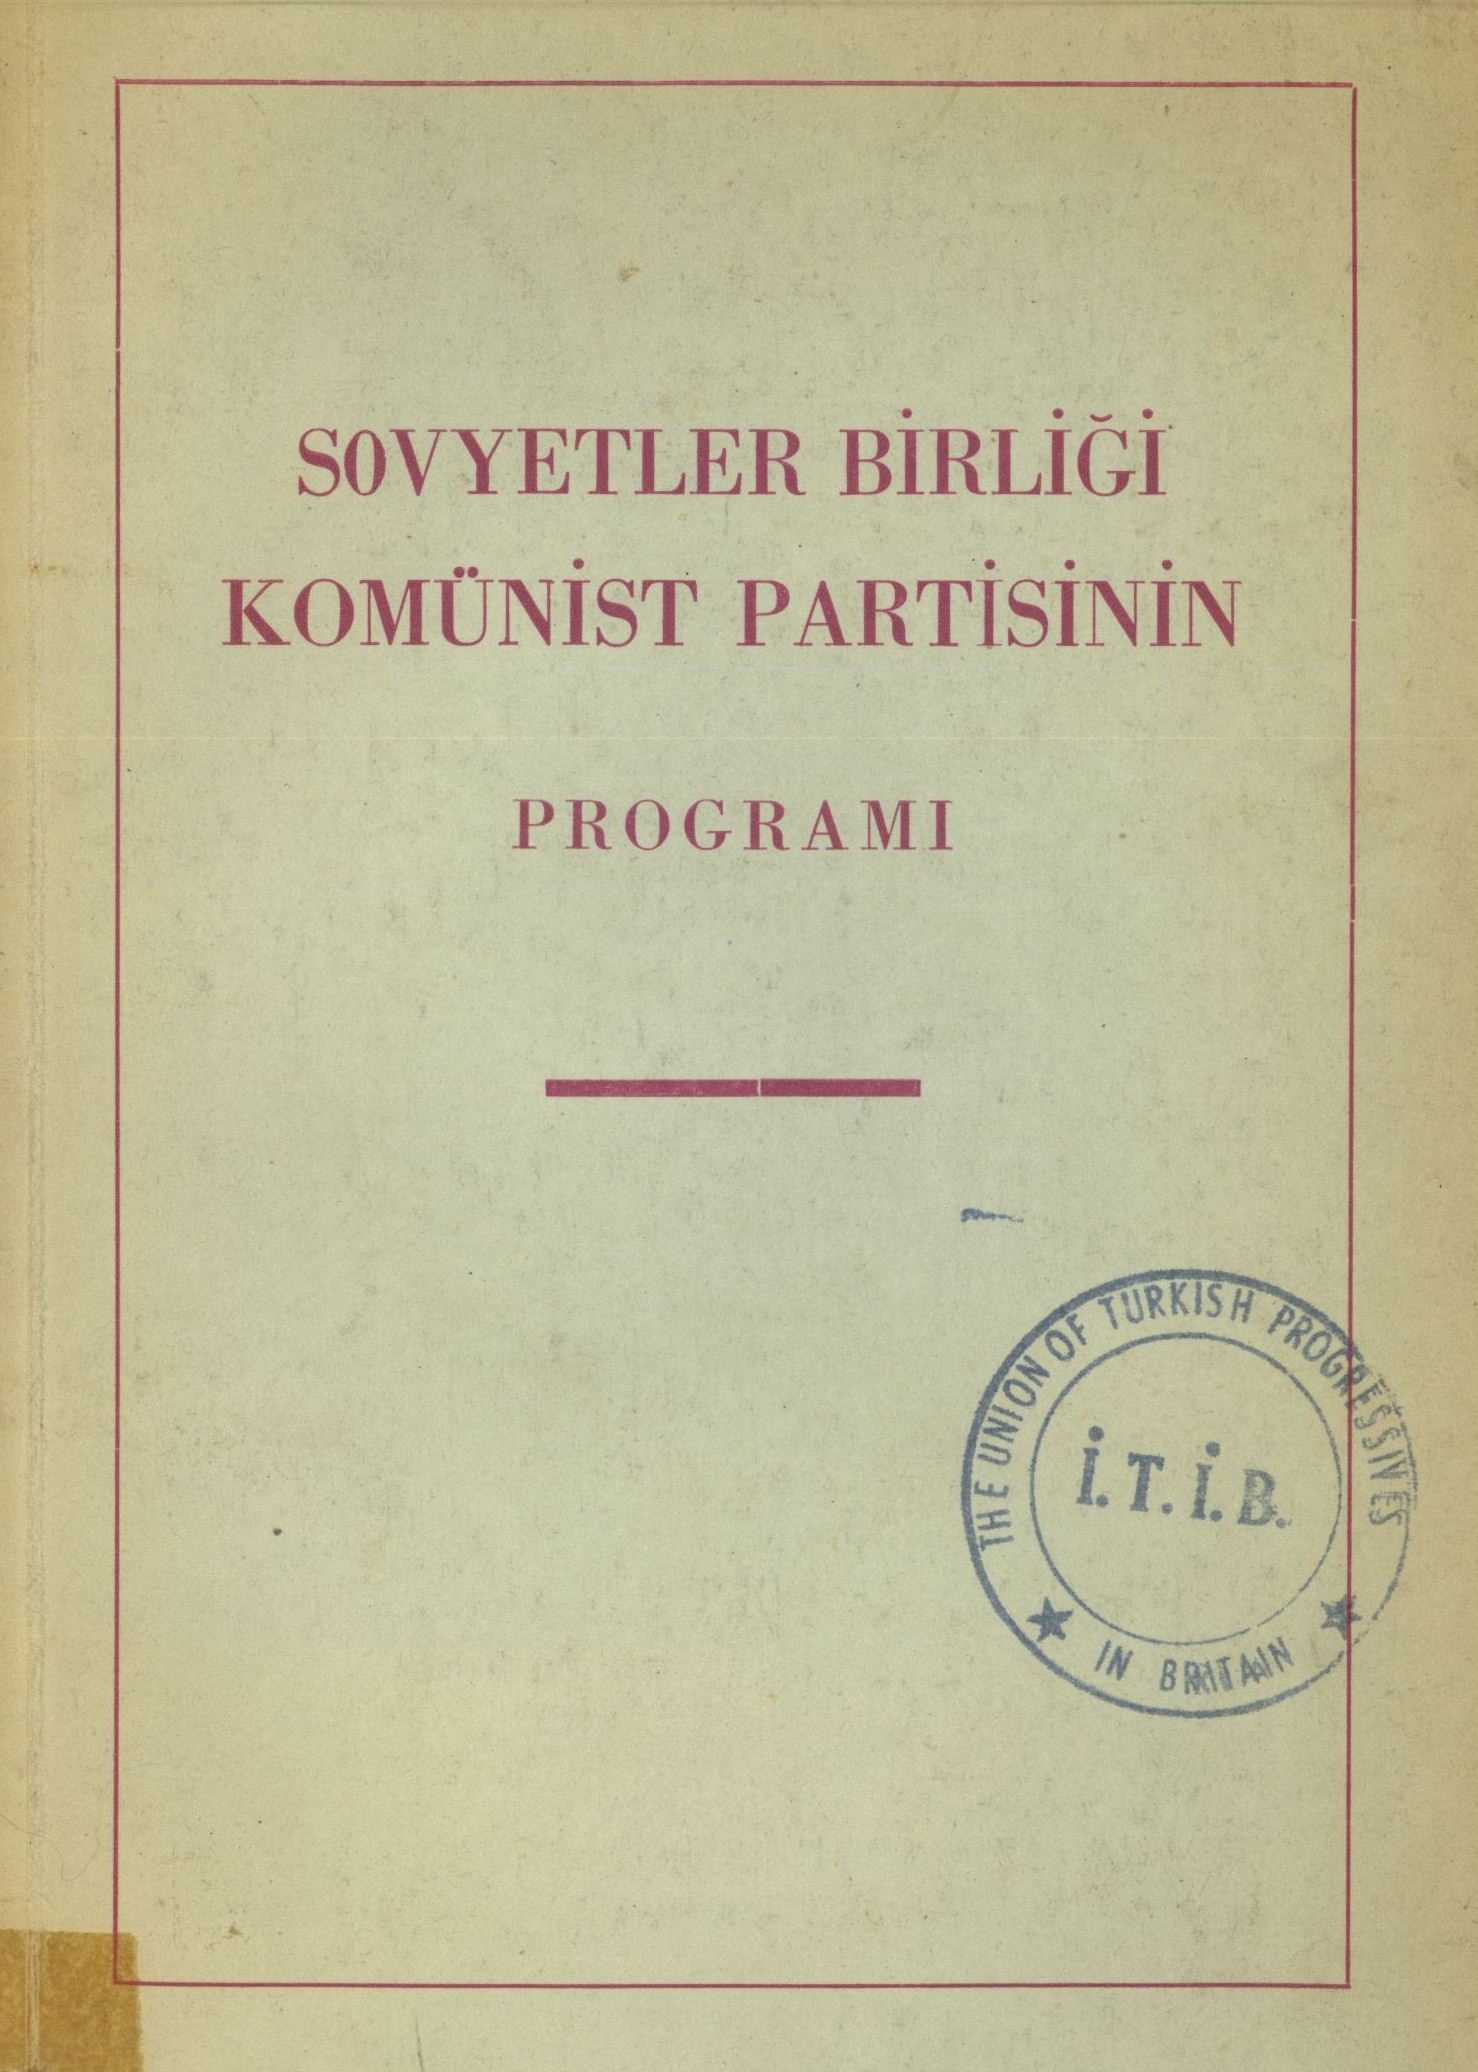 SBKP 1961 Program